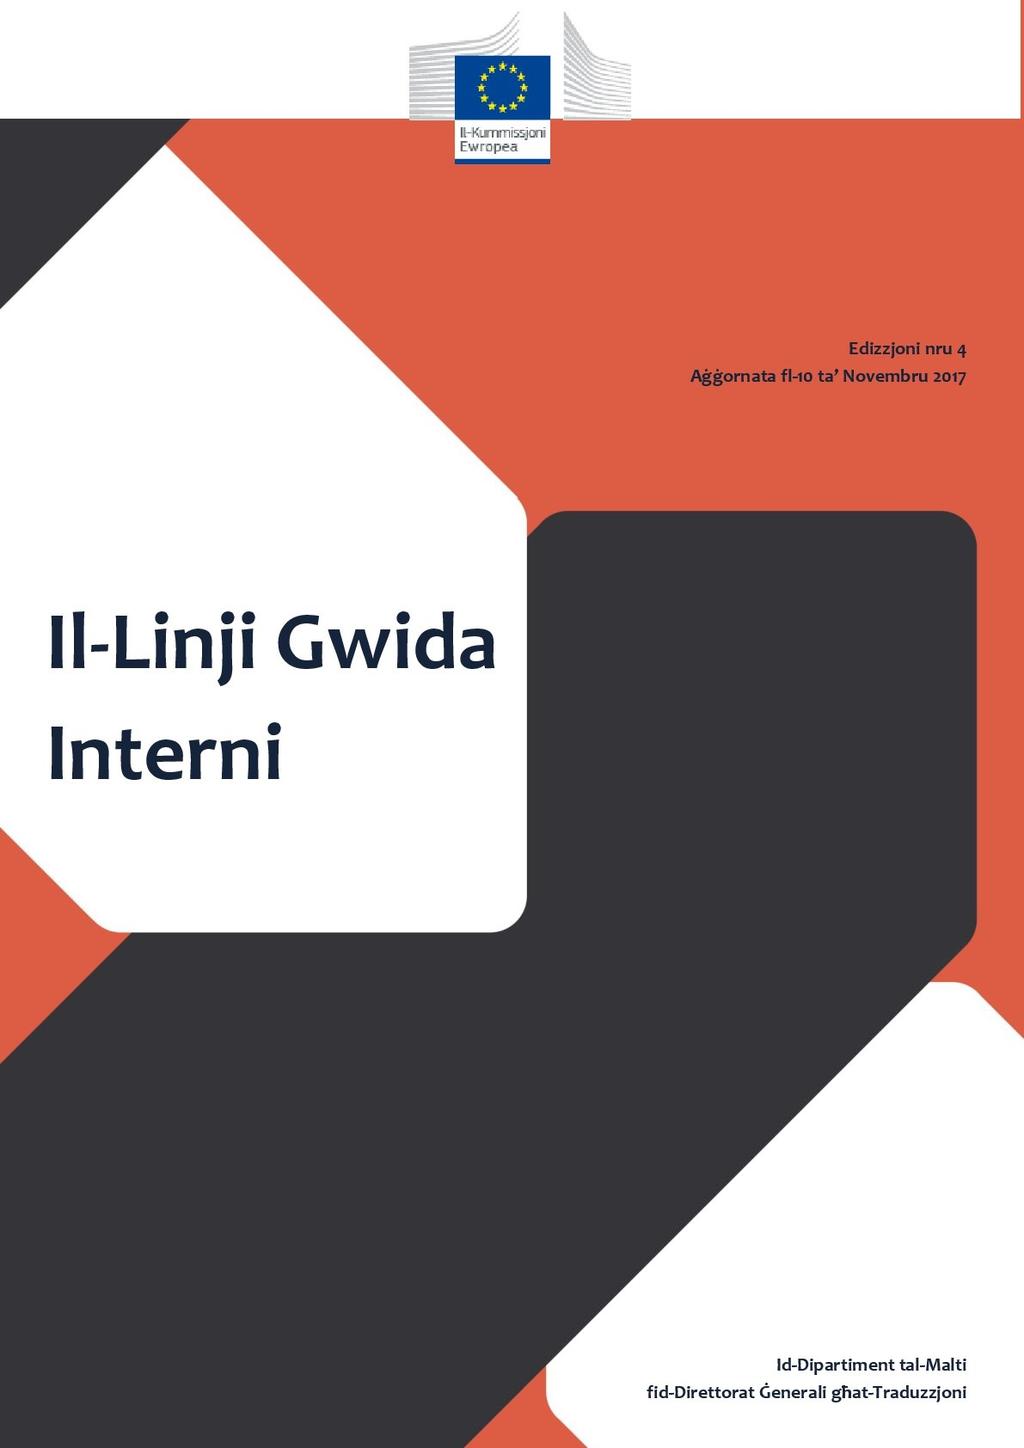 Il-Linji Interni: edizzjoni Gwida ir-raba Victor Bonanno I l-grupp Lingwistiku bi pjaċir iħabbar li ppubblika r-raba edizzjoni ta Il-Linji Gwida Interni (LGI).